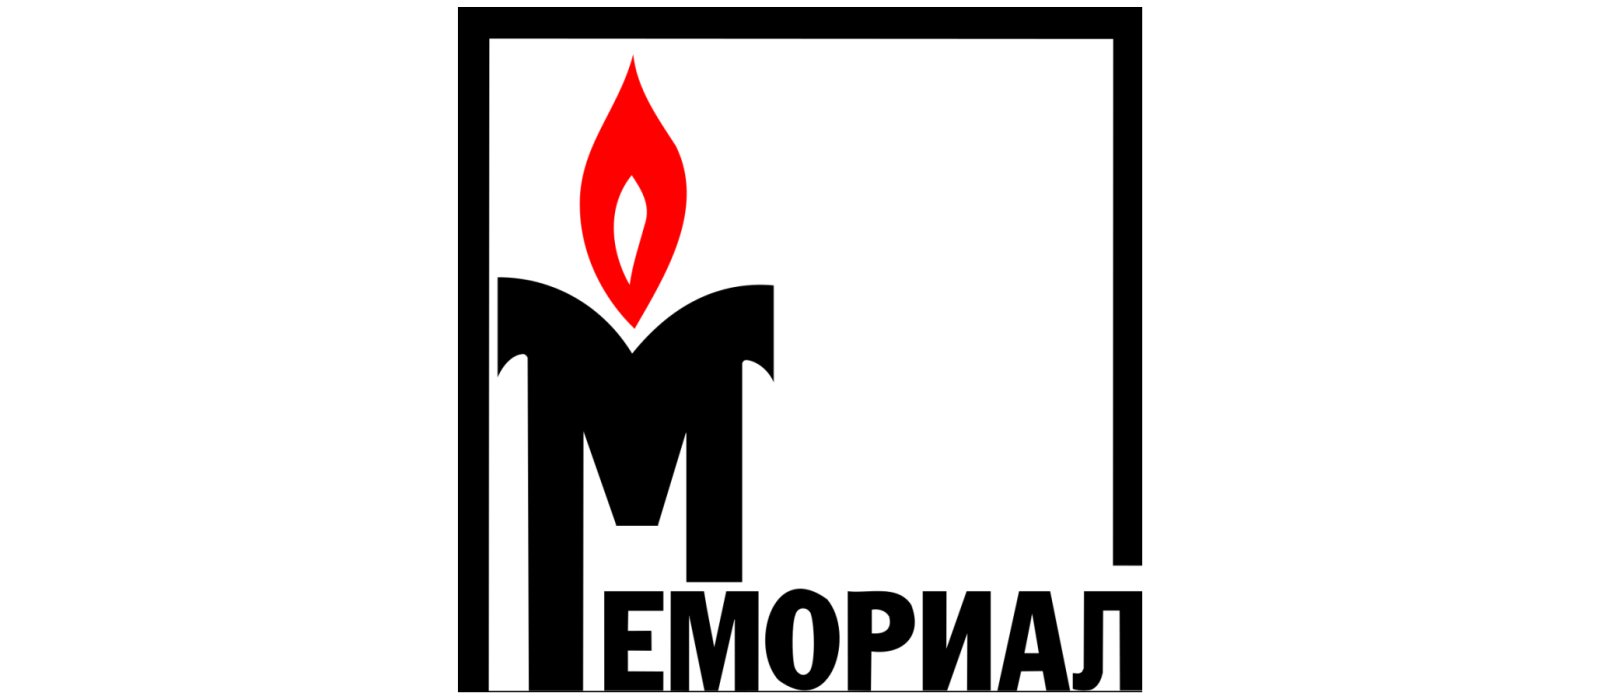 Върховният съд на Русия нареди закриването на Мемориал   една от